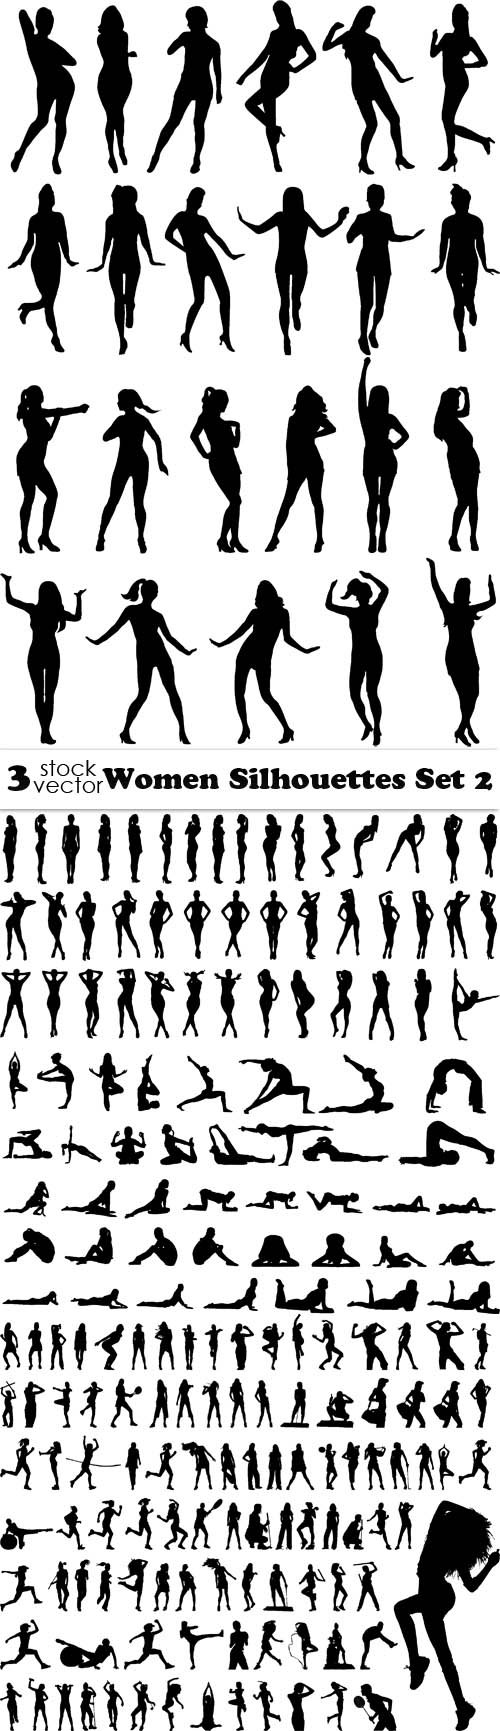 Vectors - Women Silhouettes Set 2